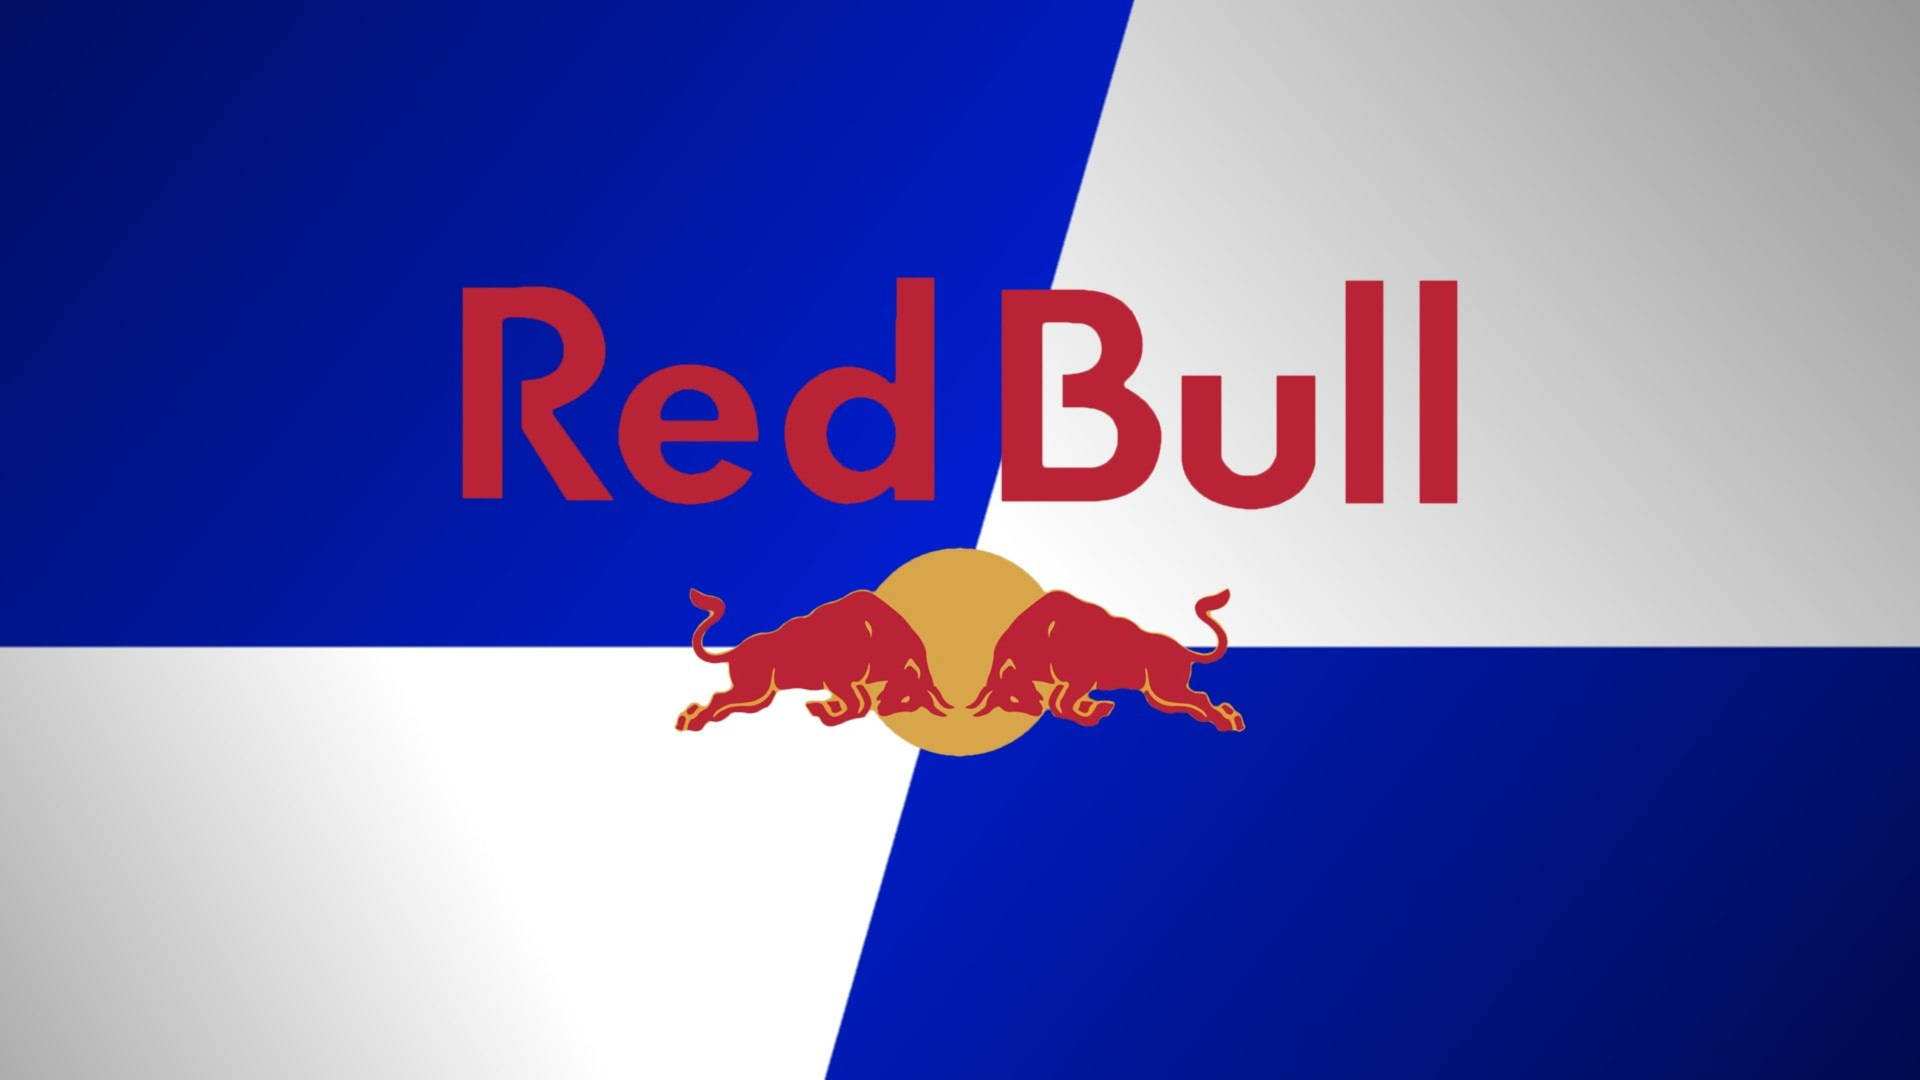 Red Bull Brand Logo Background